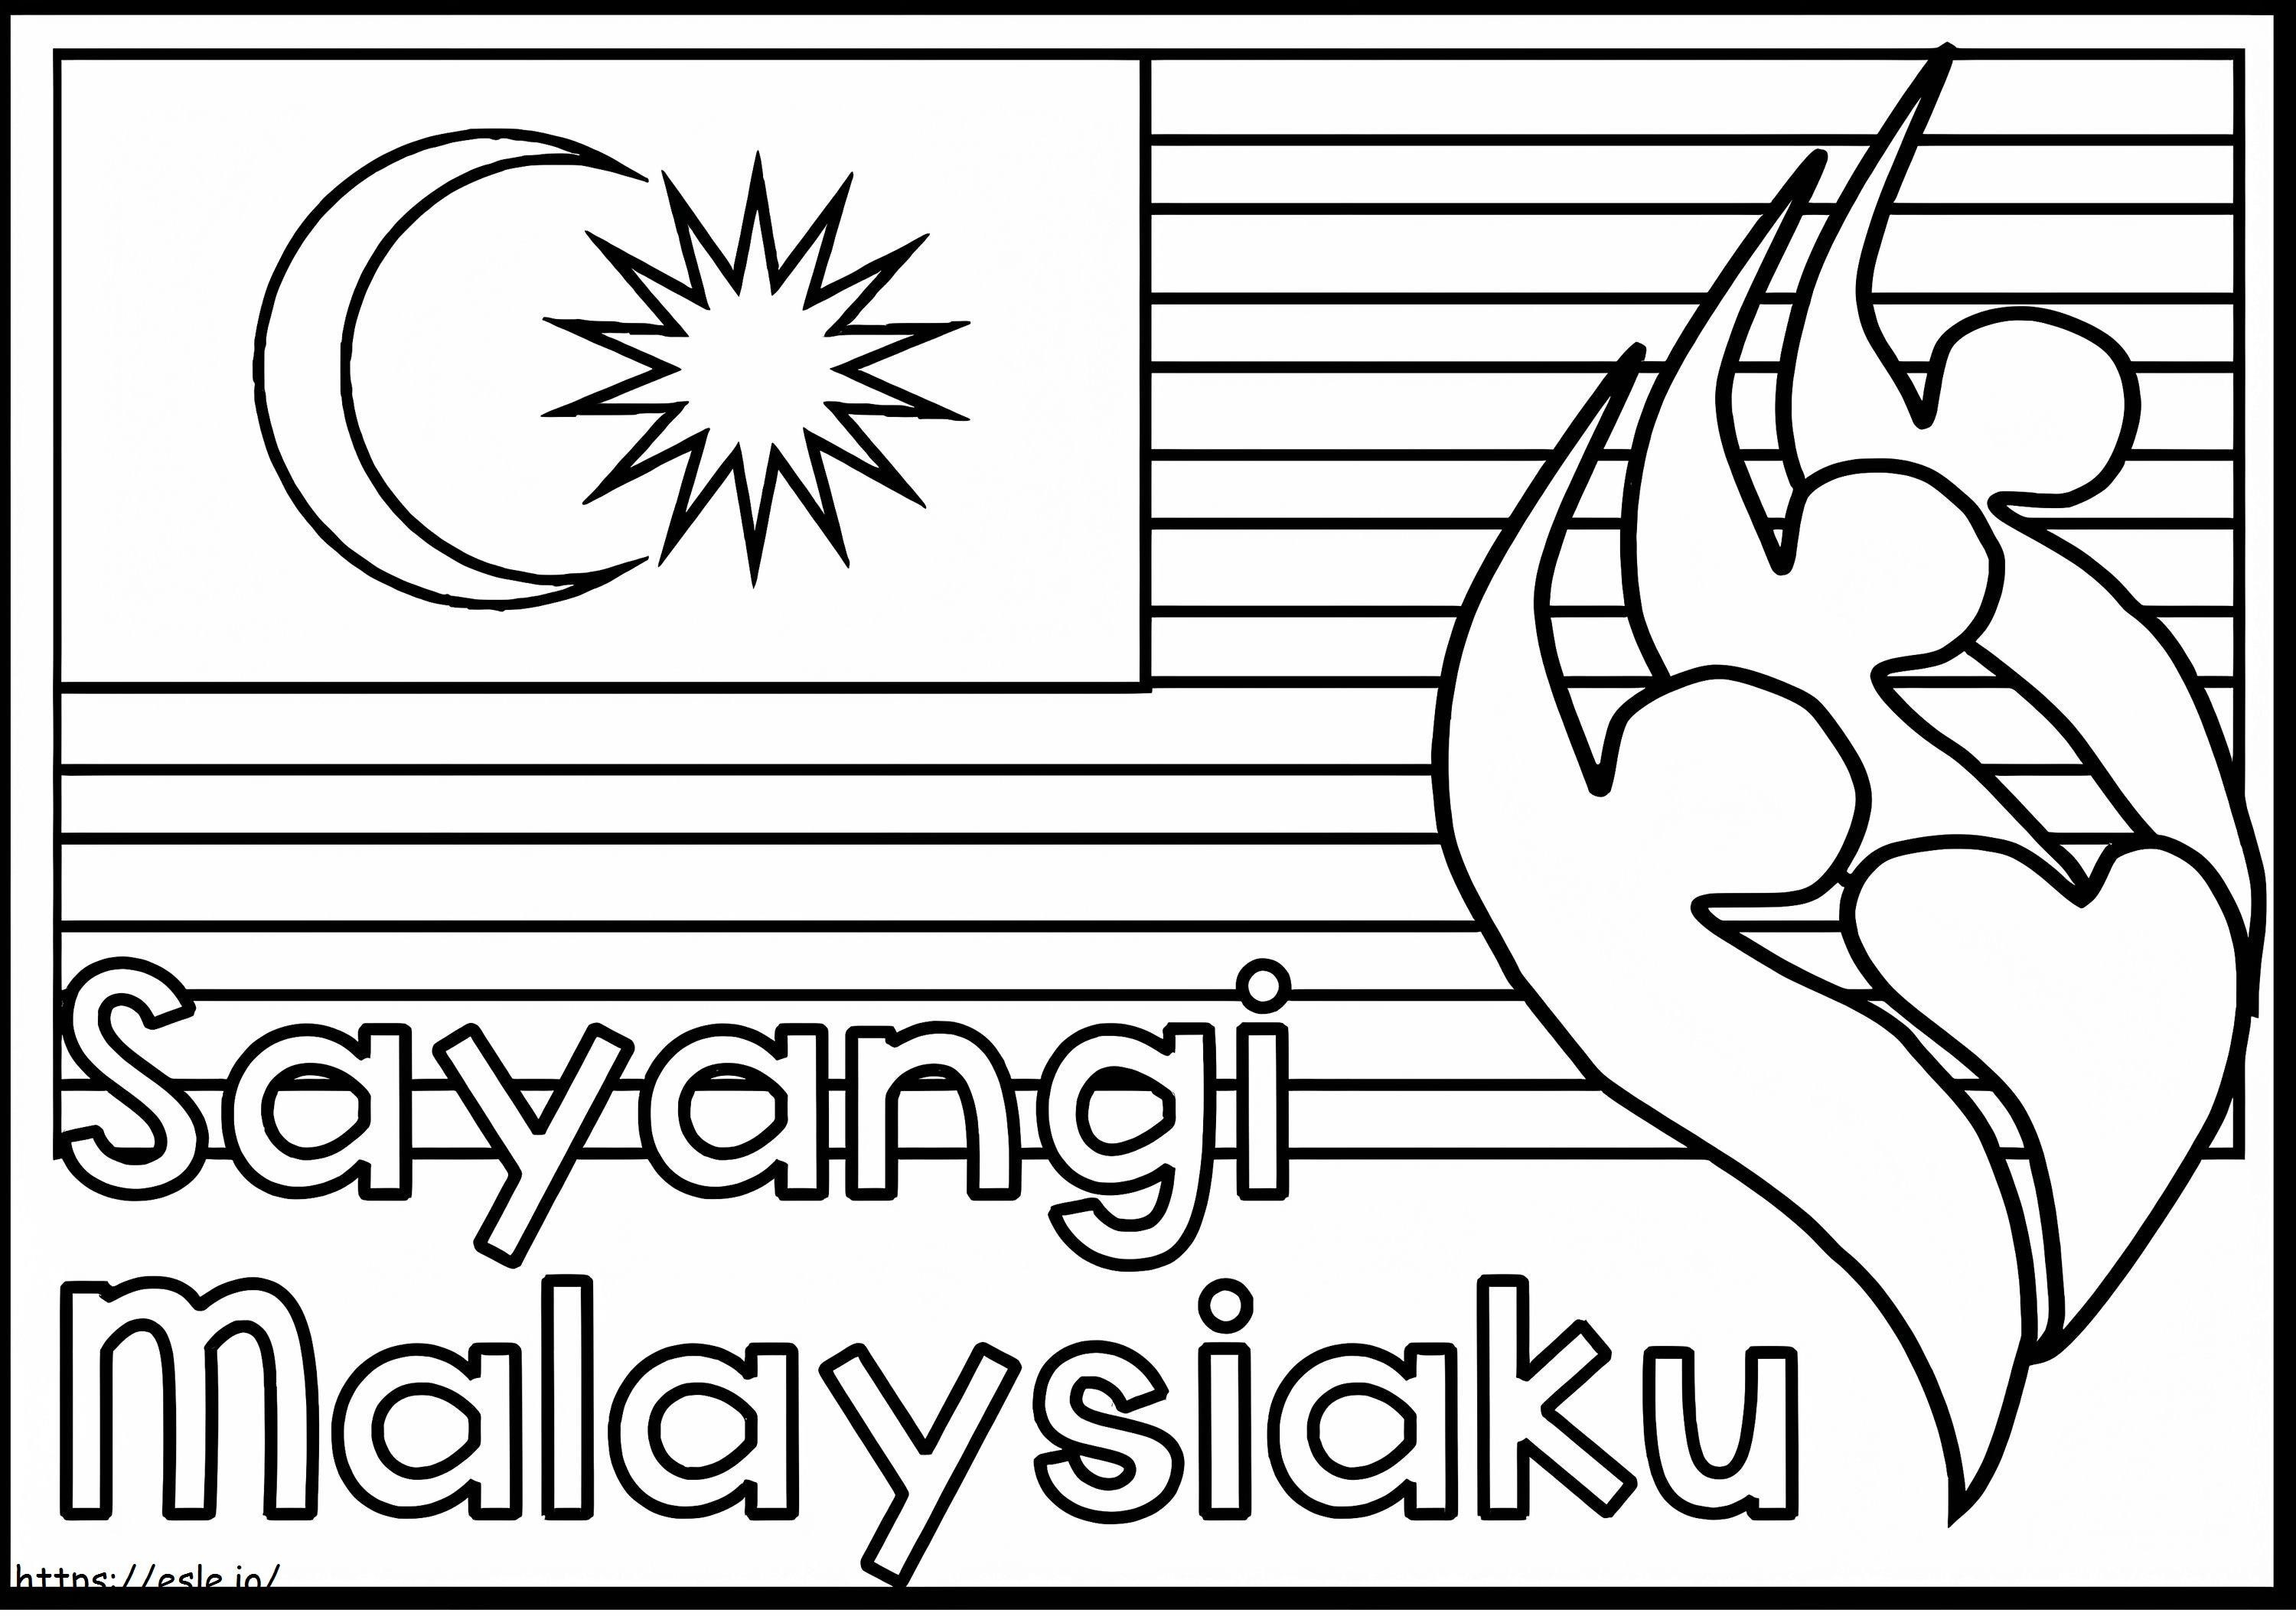 Coloriage Malaisie 1 à imprimer dessin